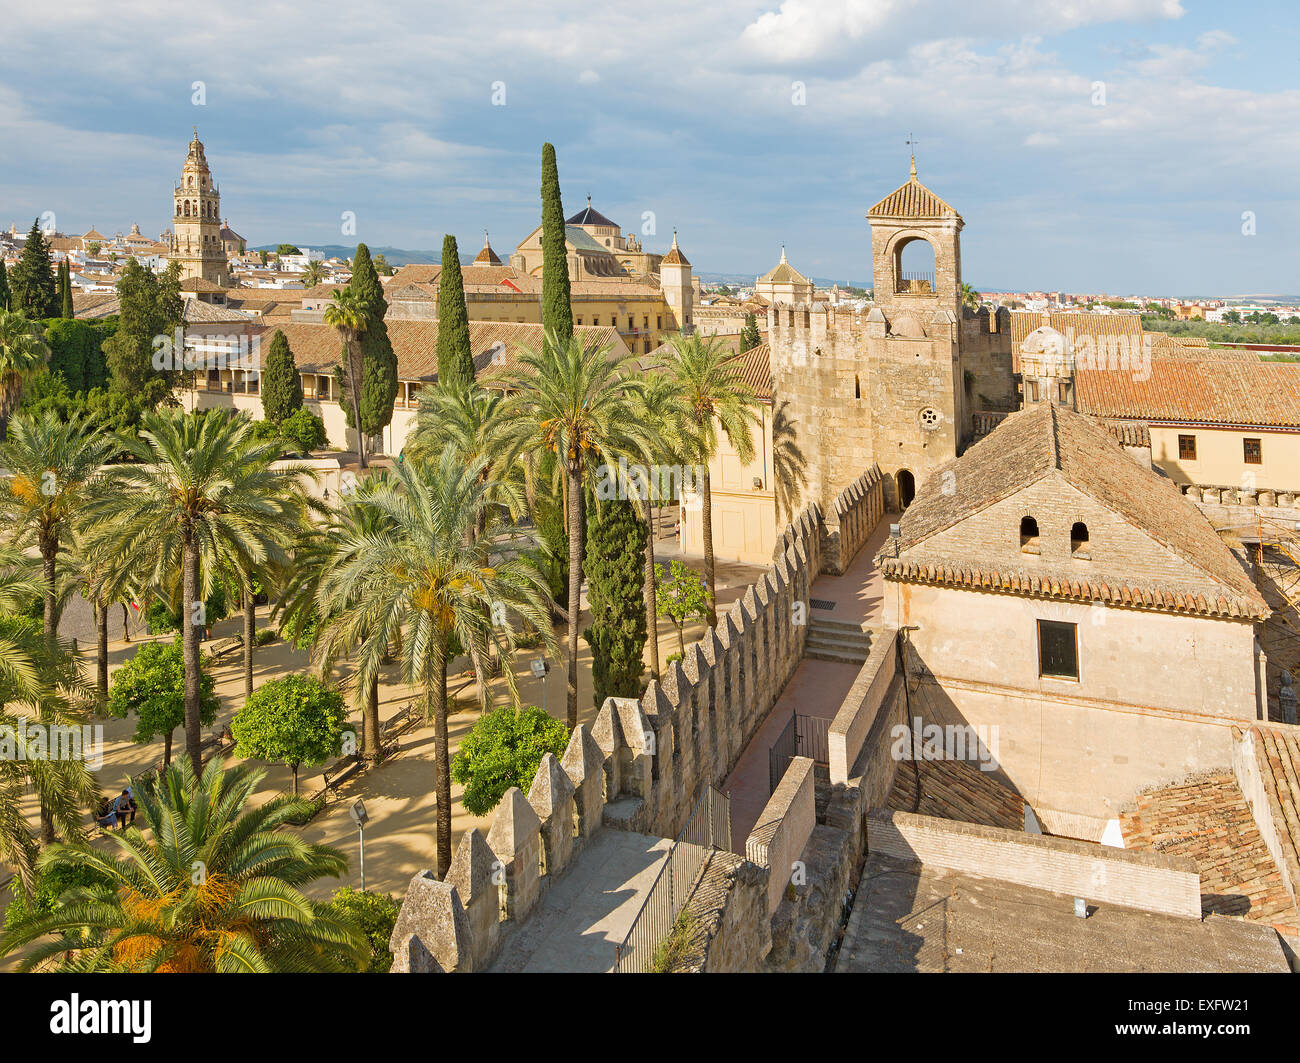 Cordoba - l'outlook dal castello Alcazar de los Reyes Cristianos alla Cattedrale. Foto Stock